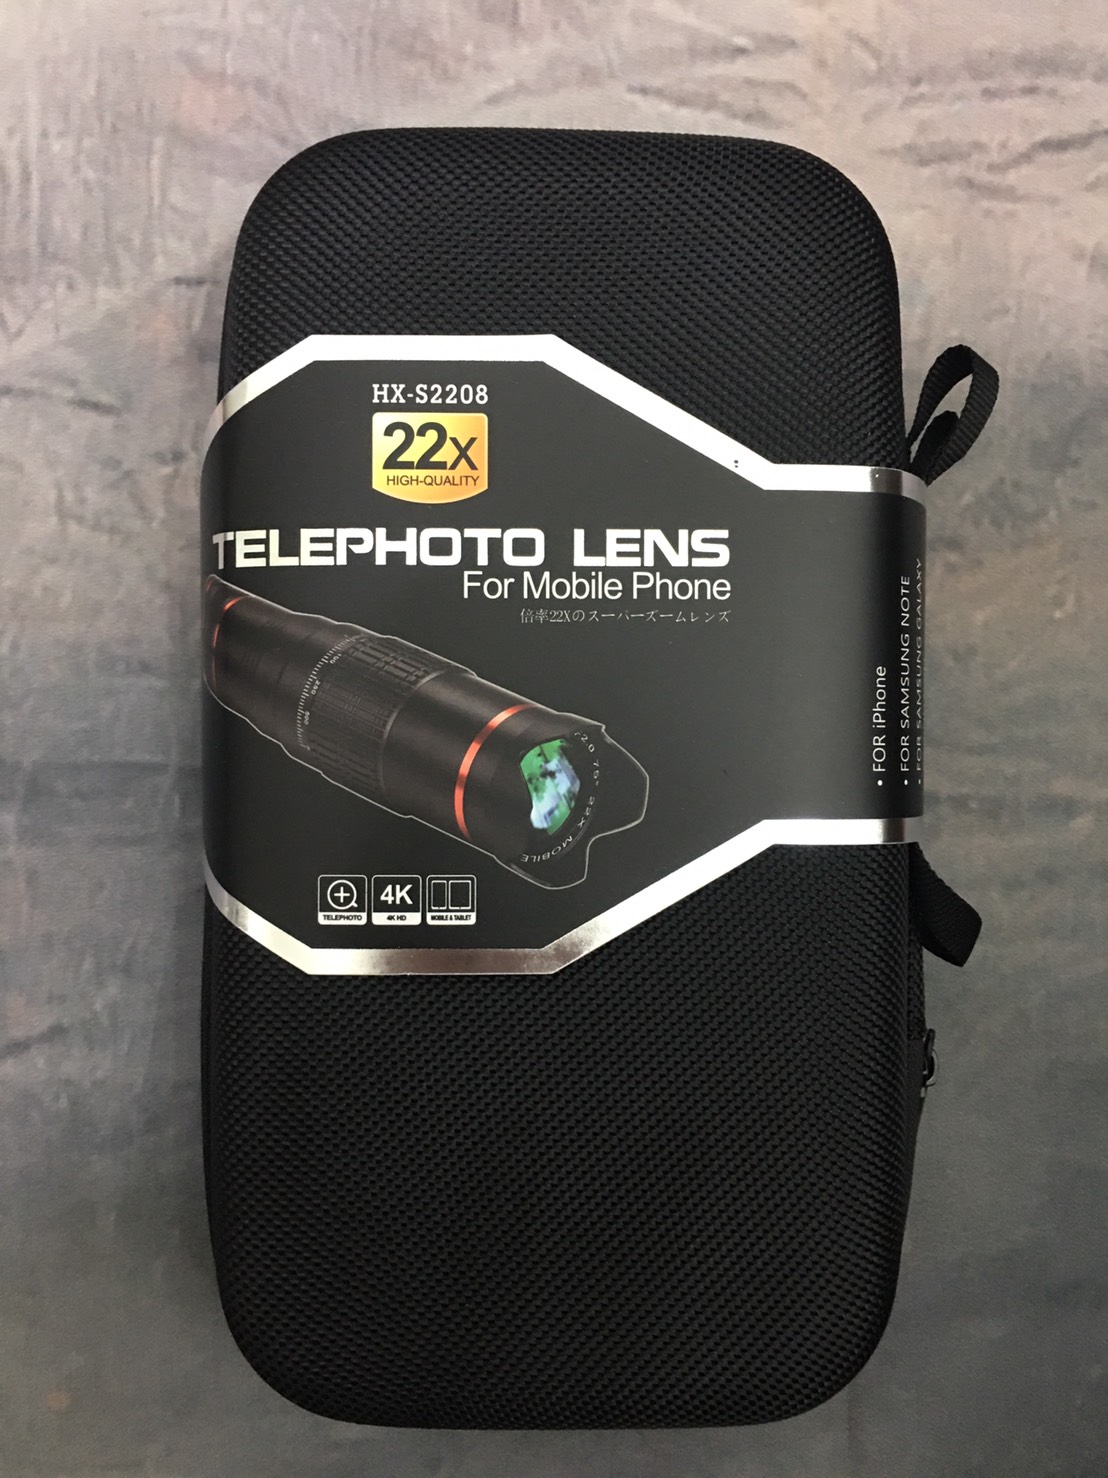 Telephoto Lens Hx-S2208 22x เลนส์ซูมมือถือ 22 เท่า